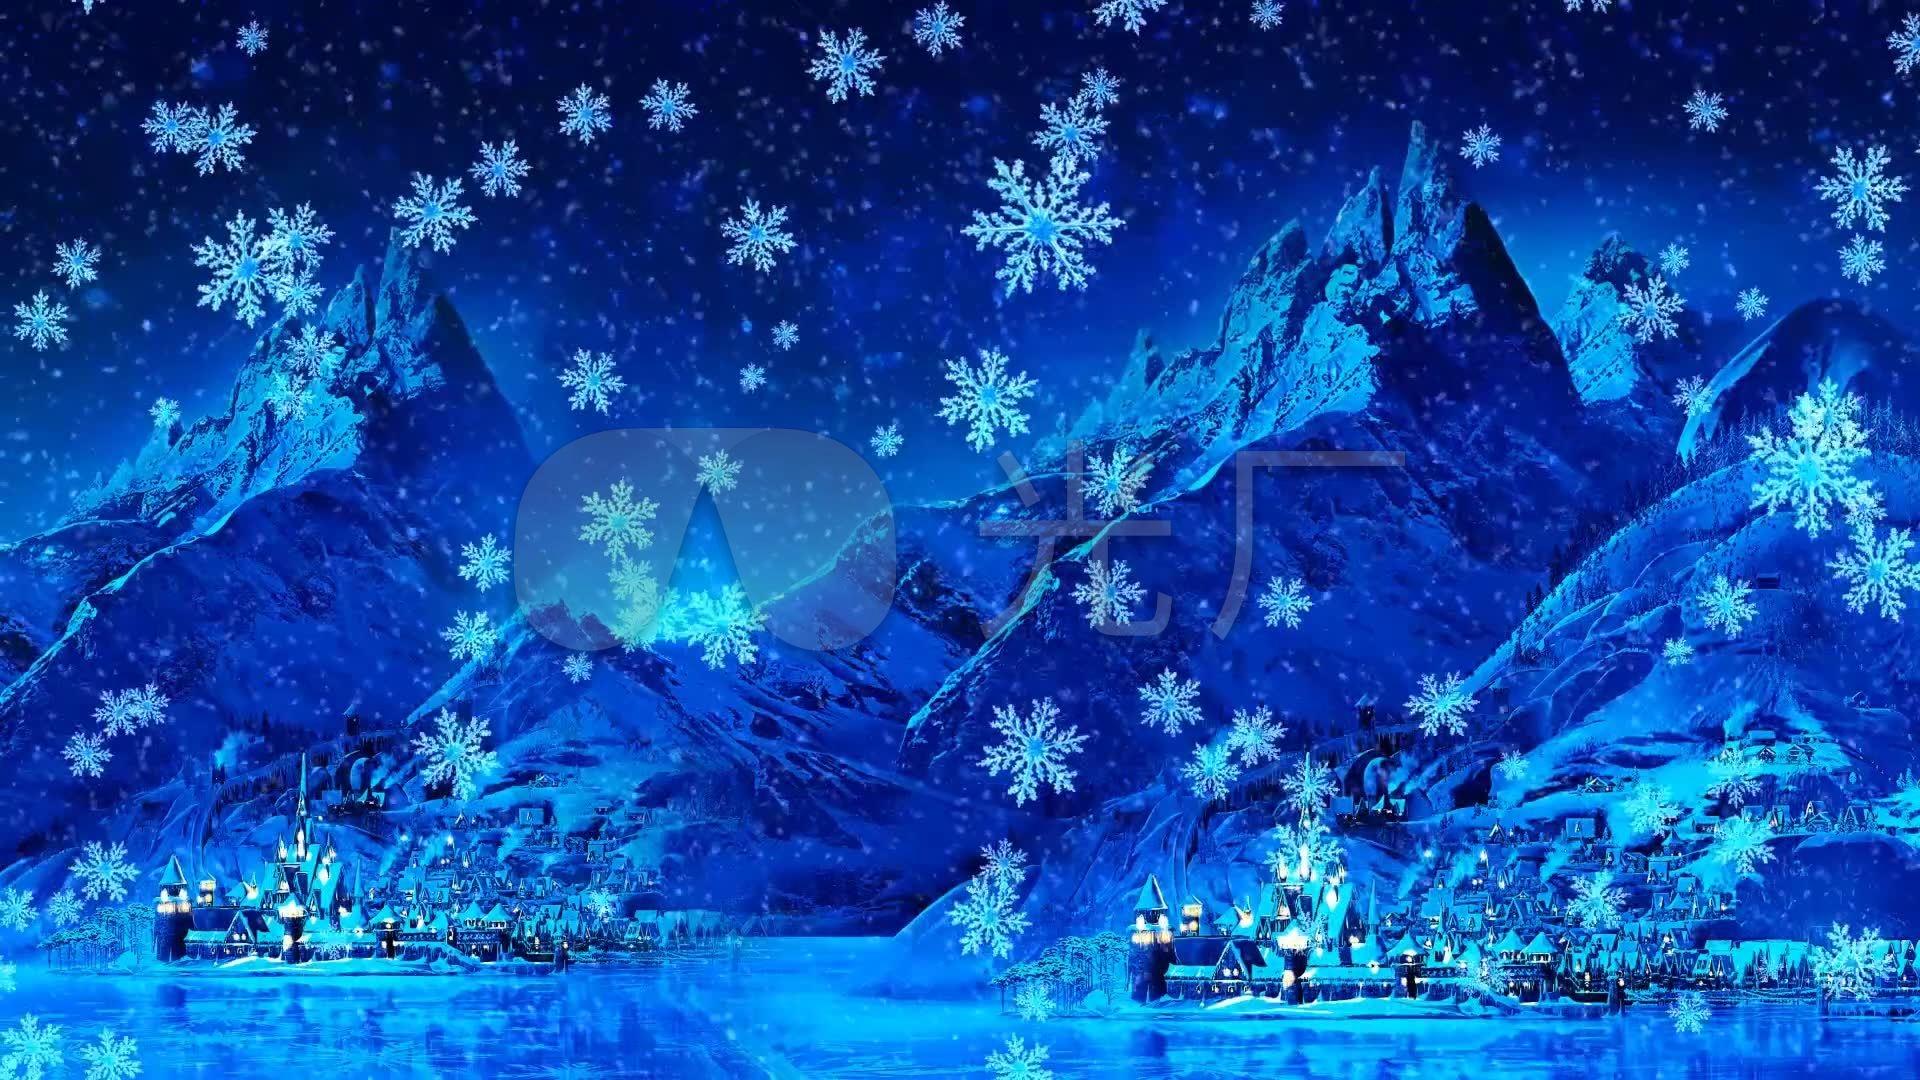 梦幻的冰雪城堡背景 震撼壁纸 宇宙电脑壁纸 - Like壁纸网